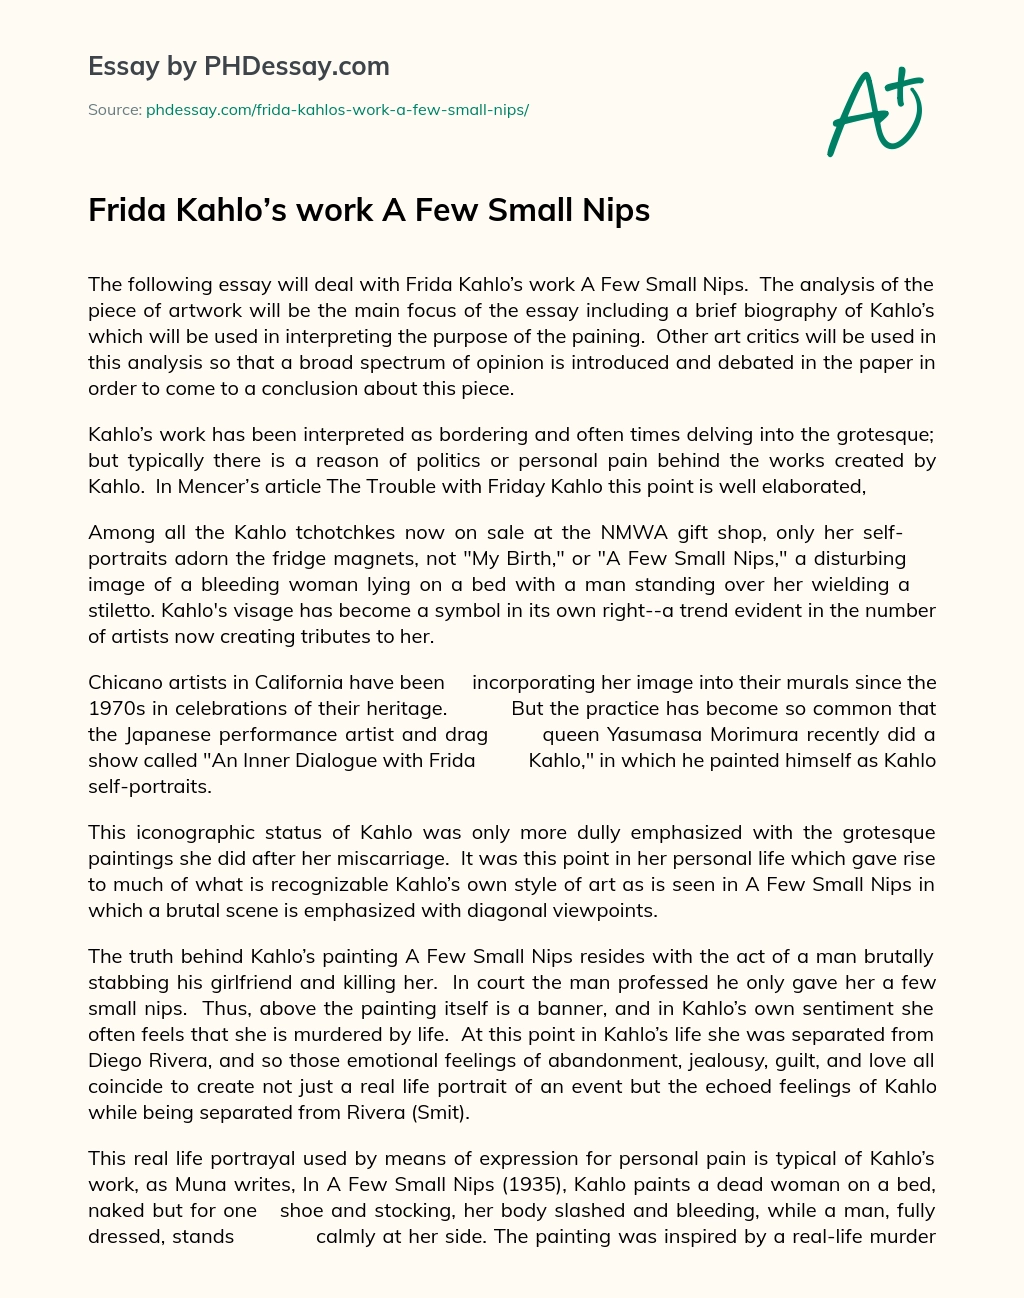 Frida Kahlo’s work A Few Small Nips essay